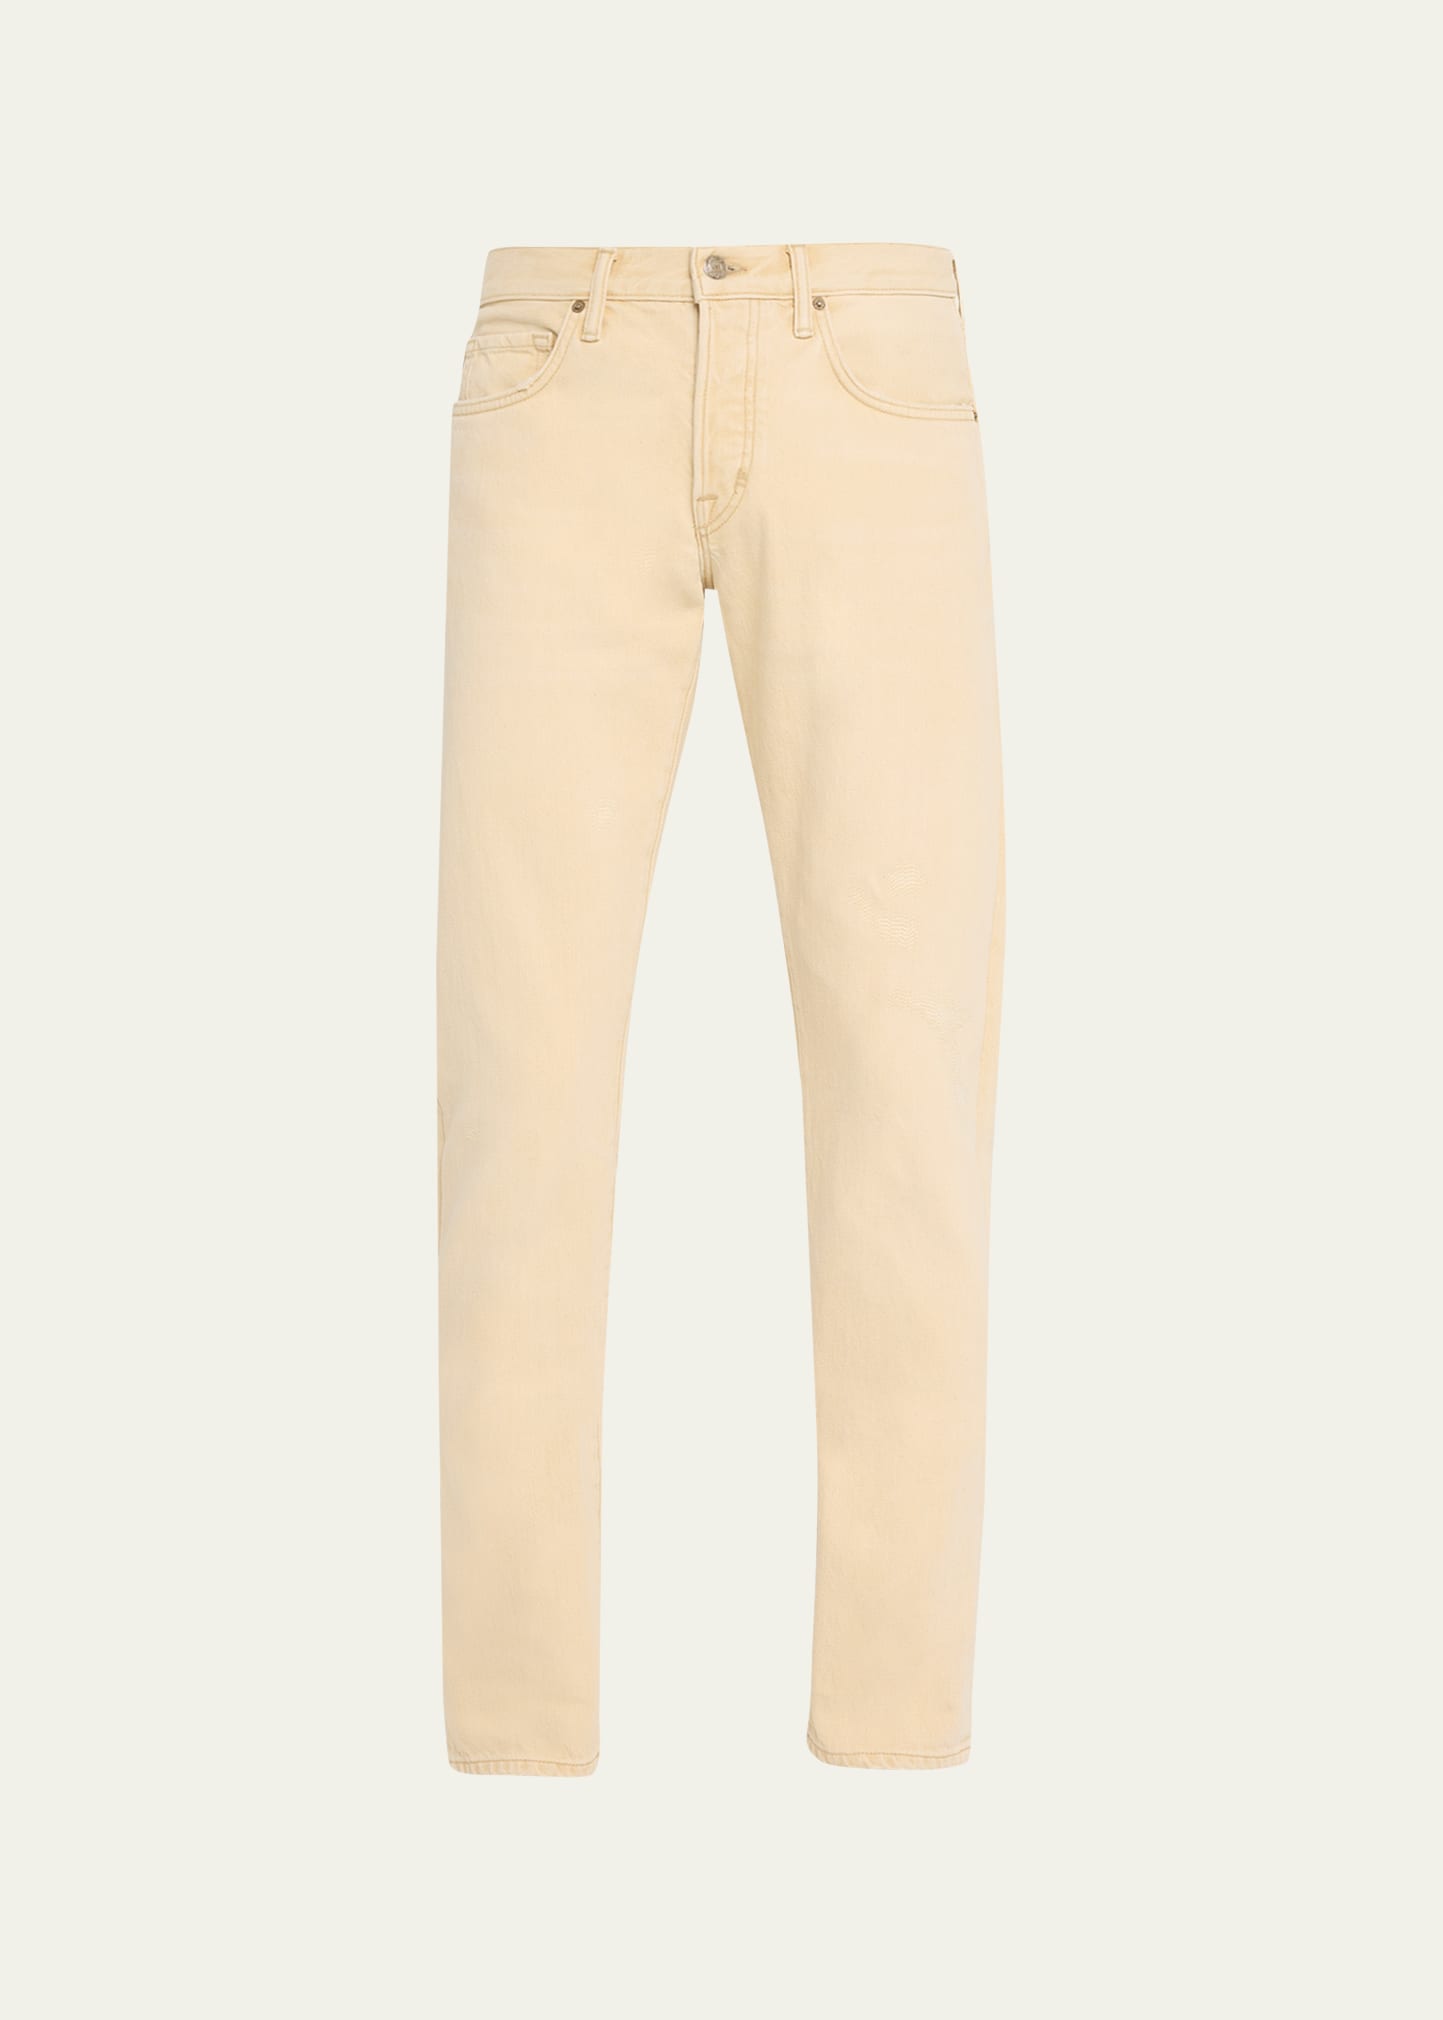 Tom Ford Men's Slim Fit 5-pocket Pants In Oat